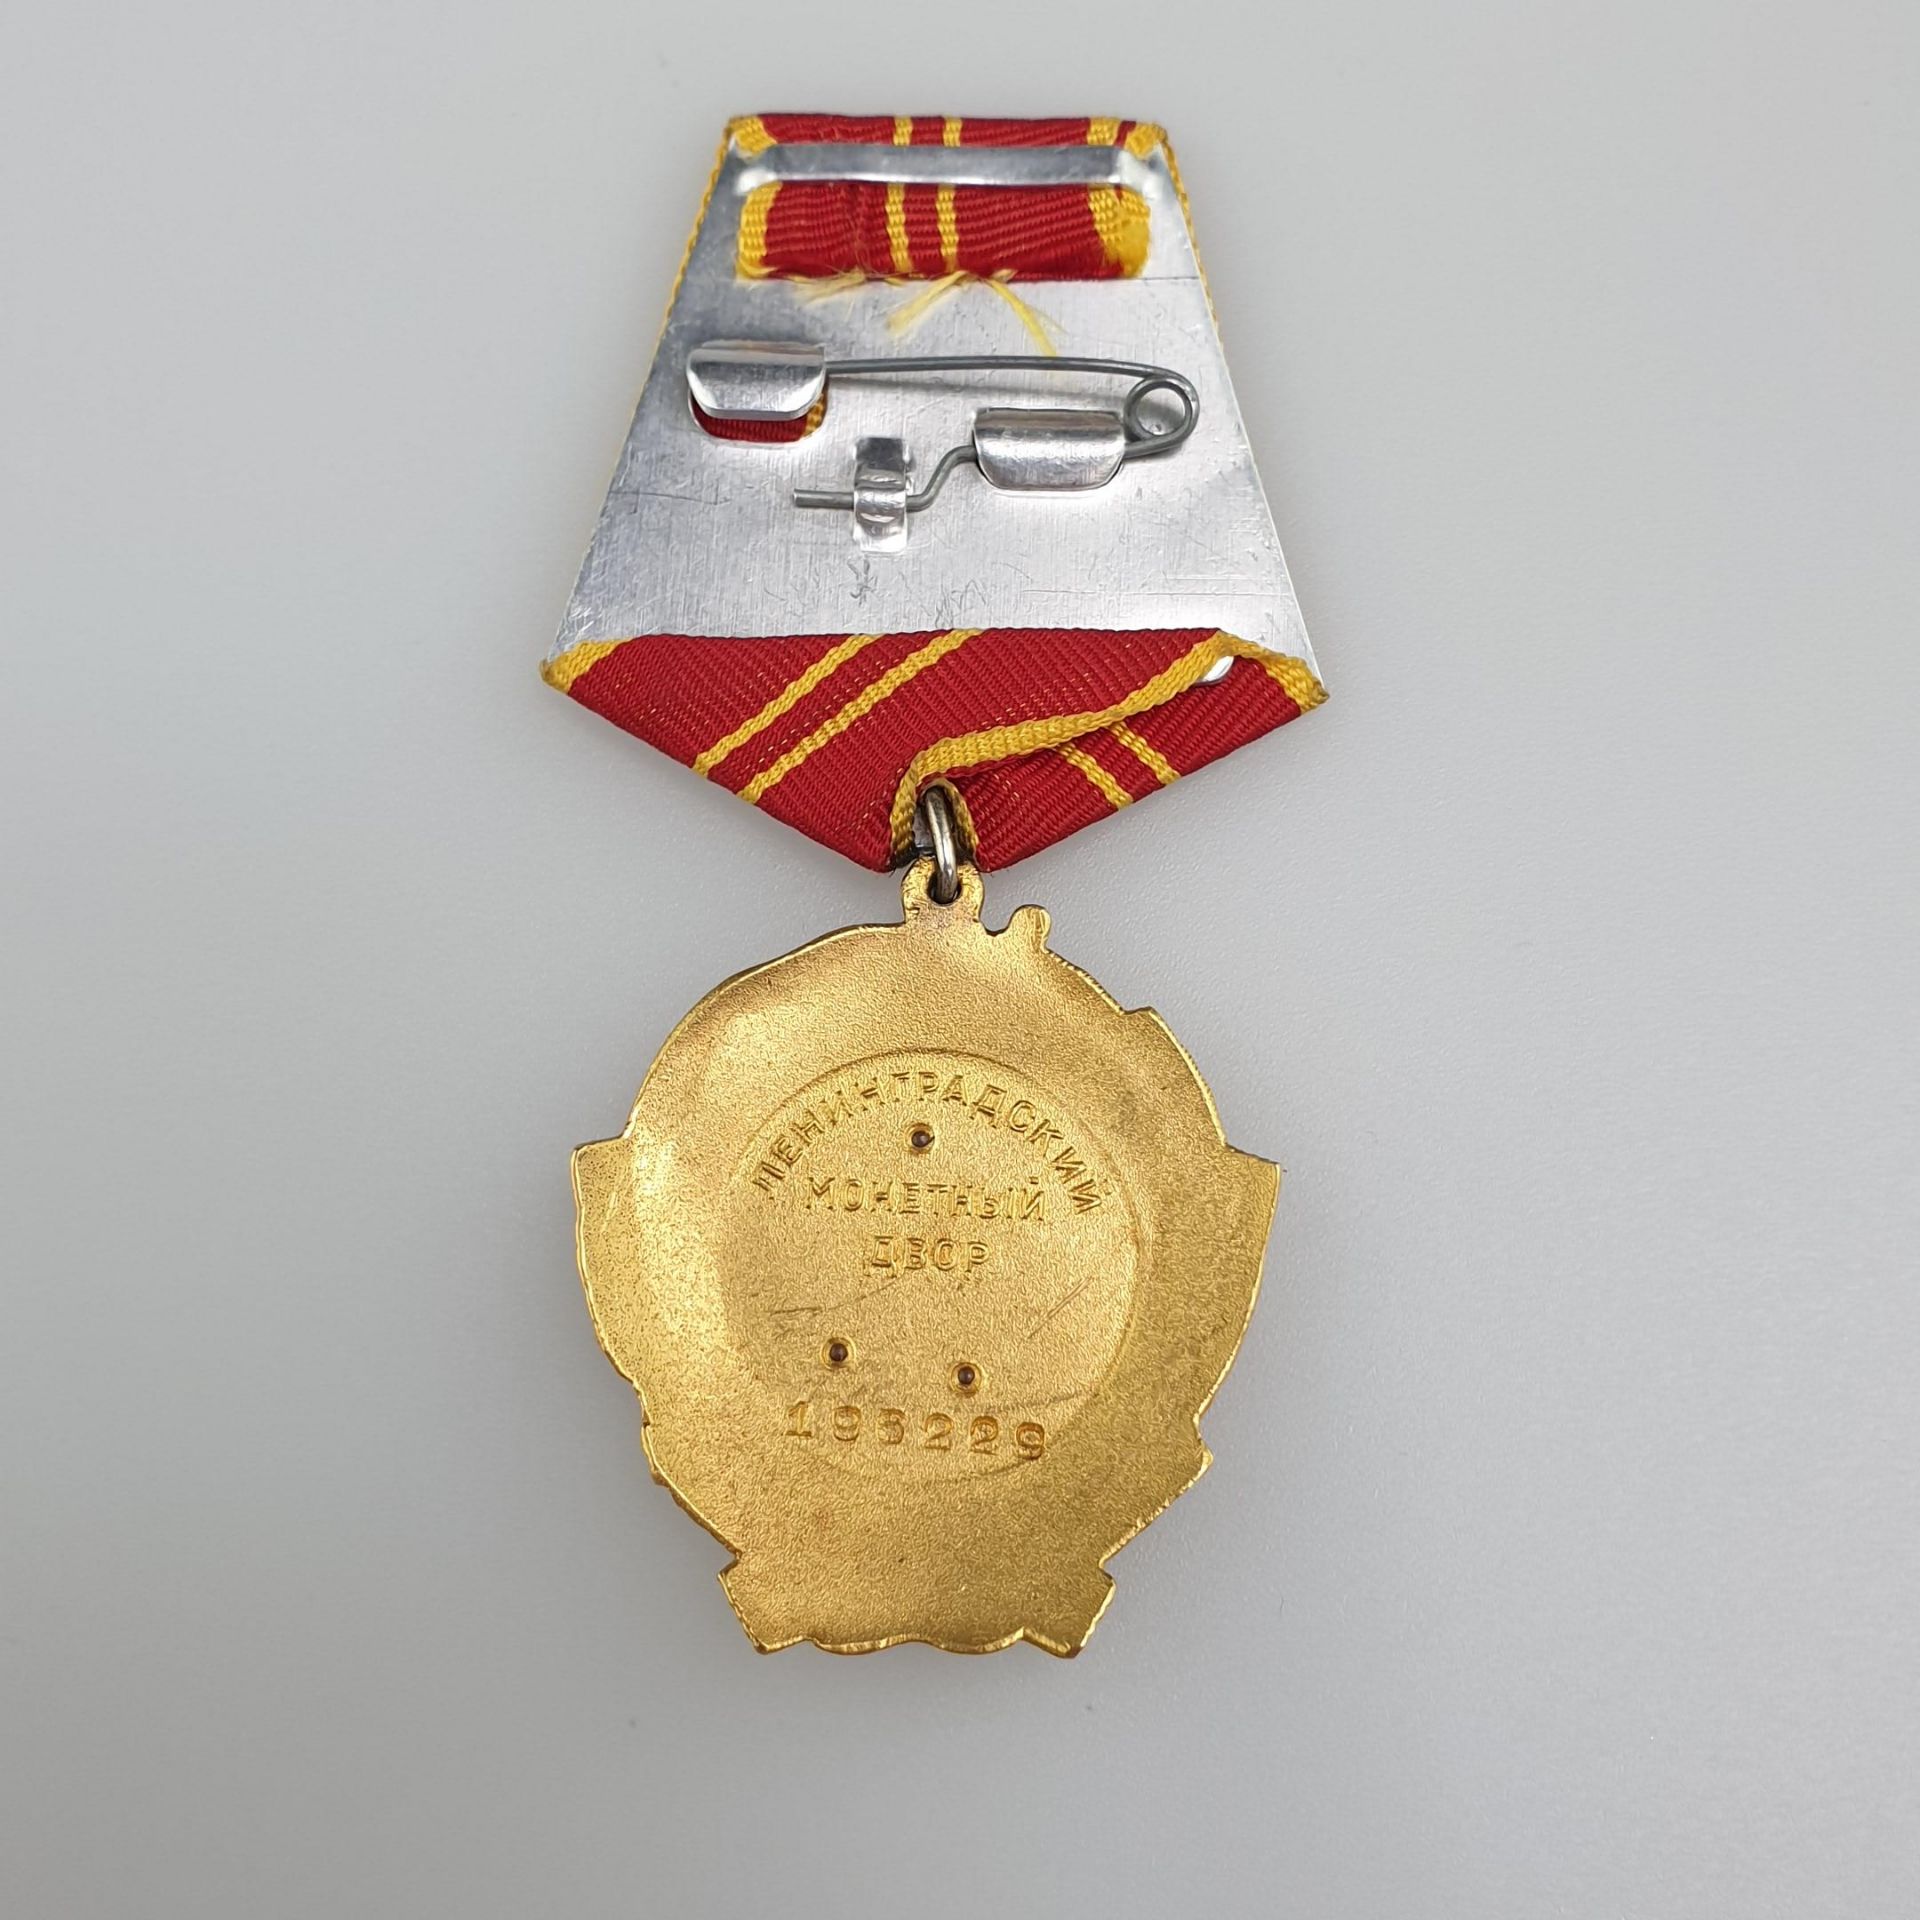 Sowjetischer Lenin-Orden - 5.Typ, Variante 1, nach 1950, Hersteller Münzenhof UdSSR, Gold und - Bild 7 aus 8